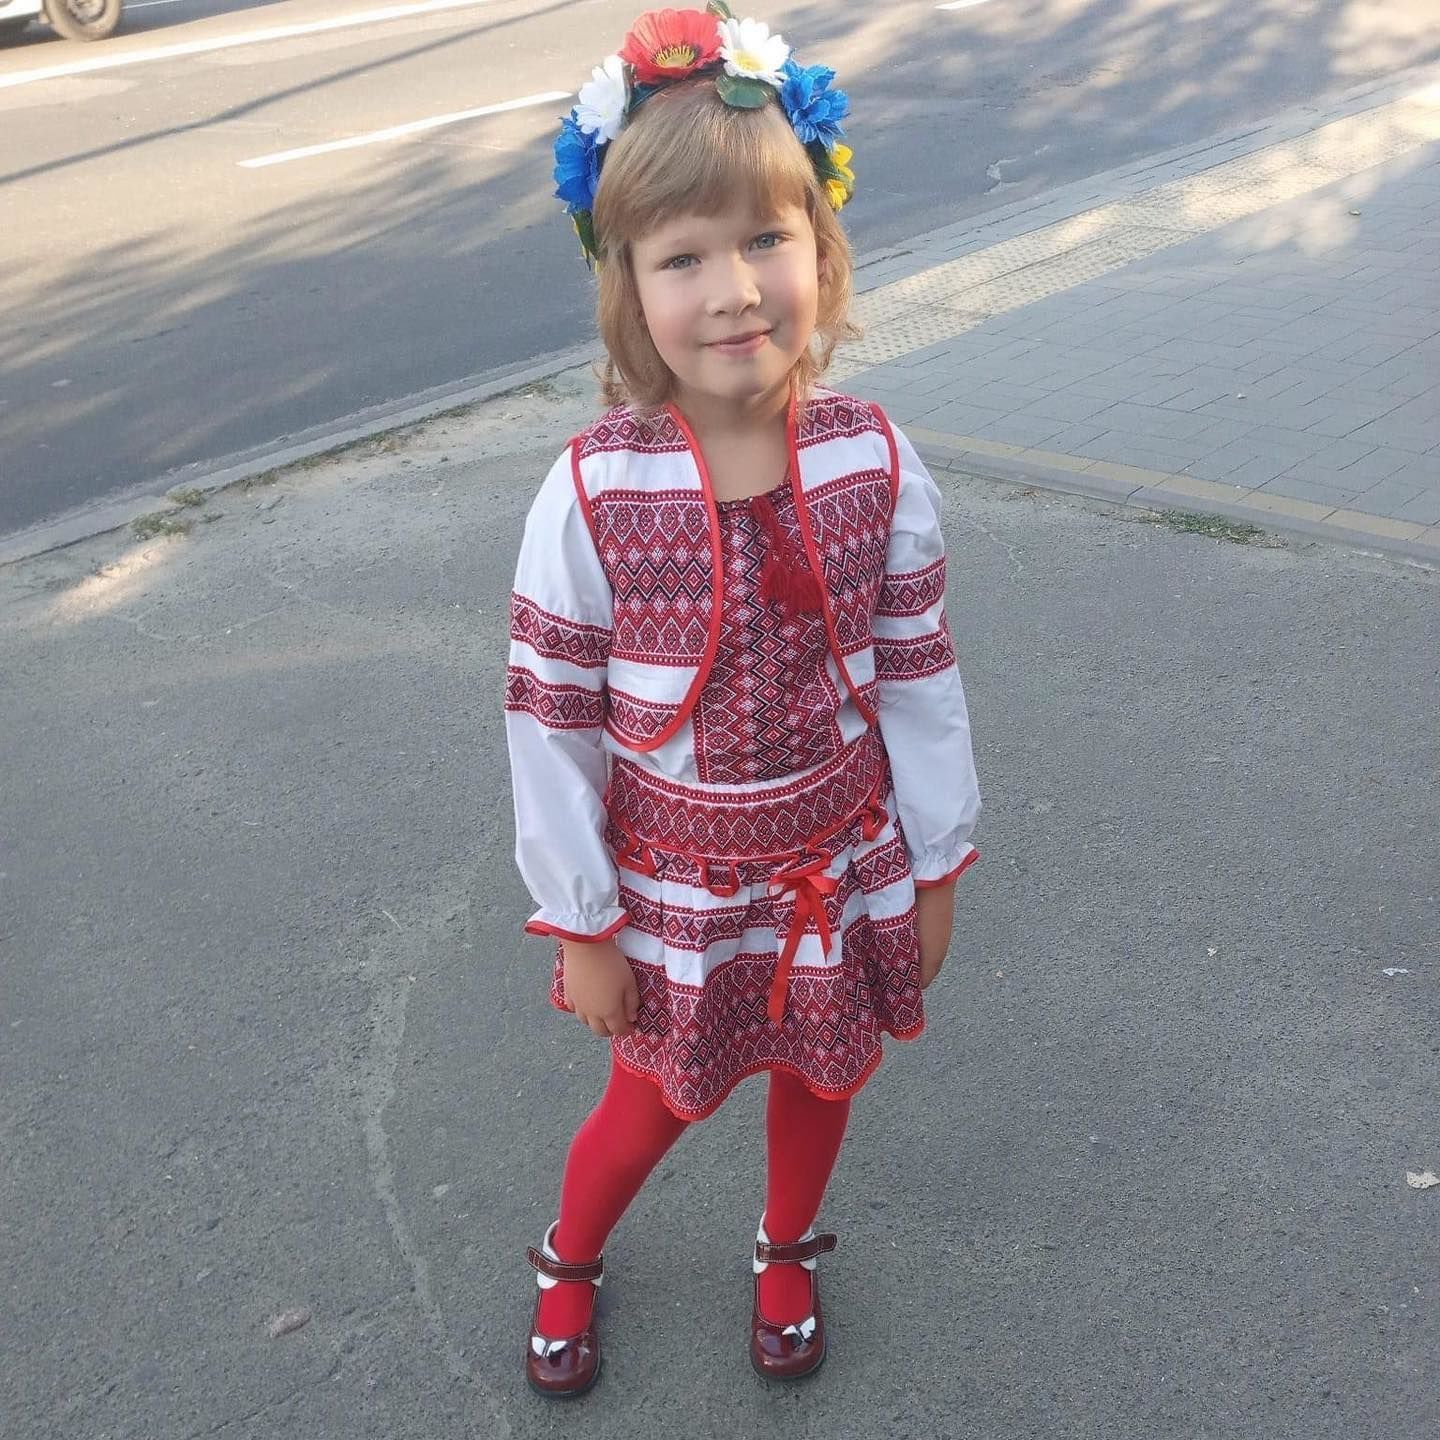 “Была очень хорошей и сообразительной девочкой”: почтим минутой молчания 6-летнюю Софию Голинскую из Чернигова 2